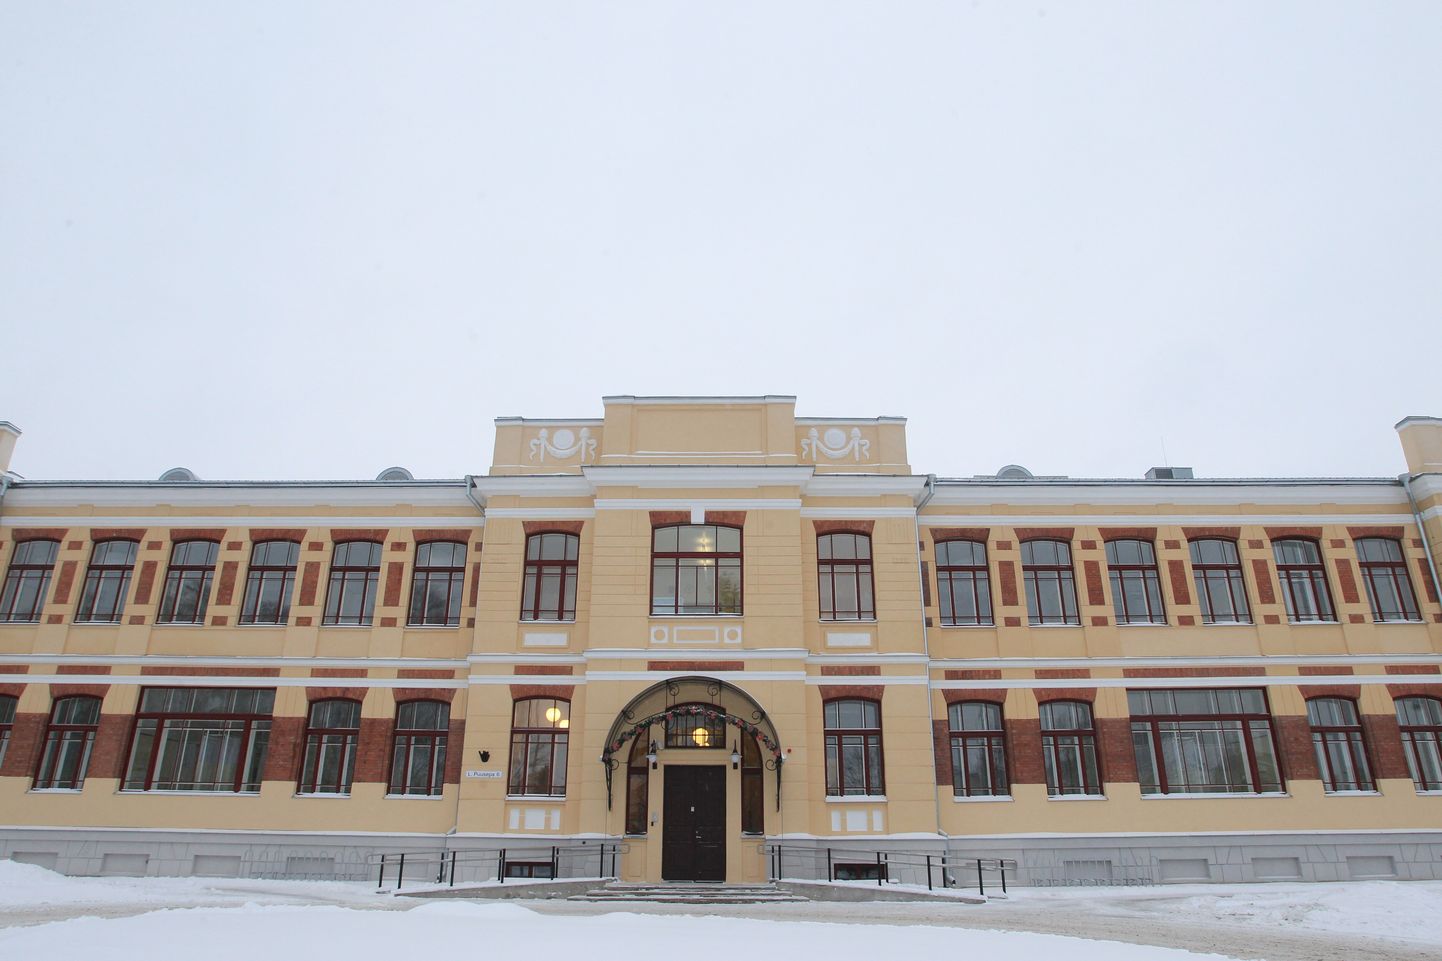 Õendusabi osakond asub L. Puusepa 6 aadressil.